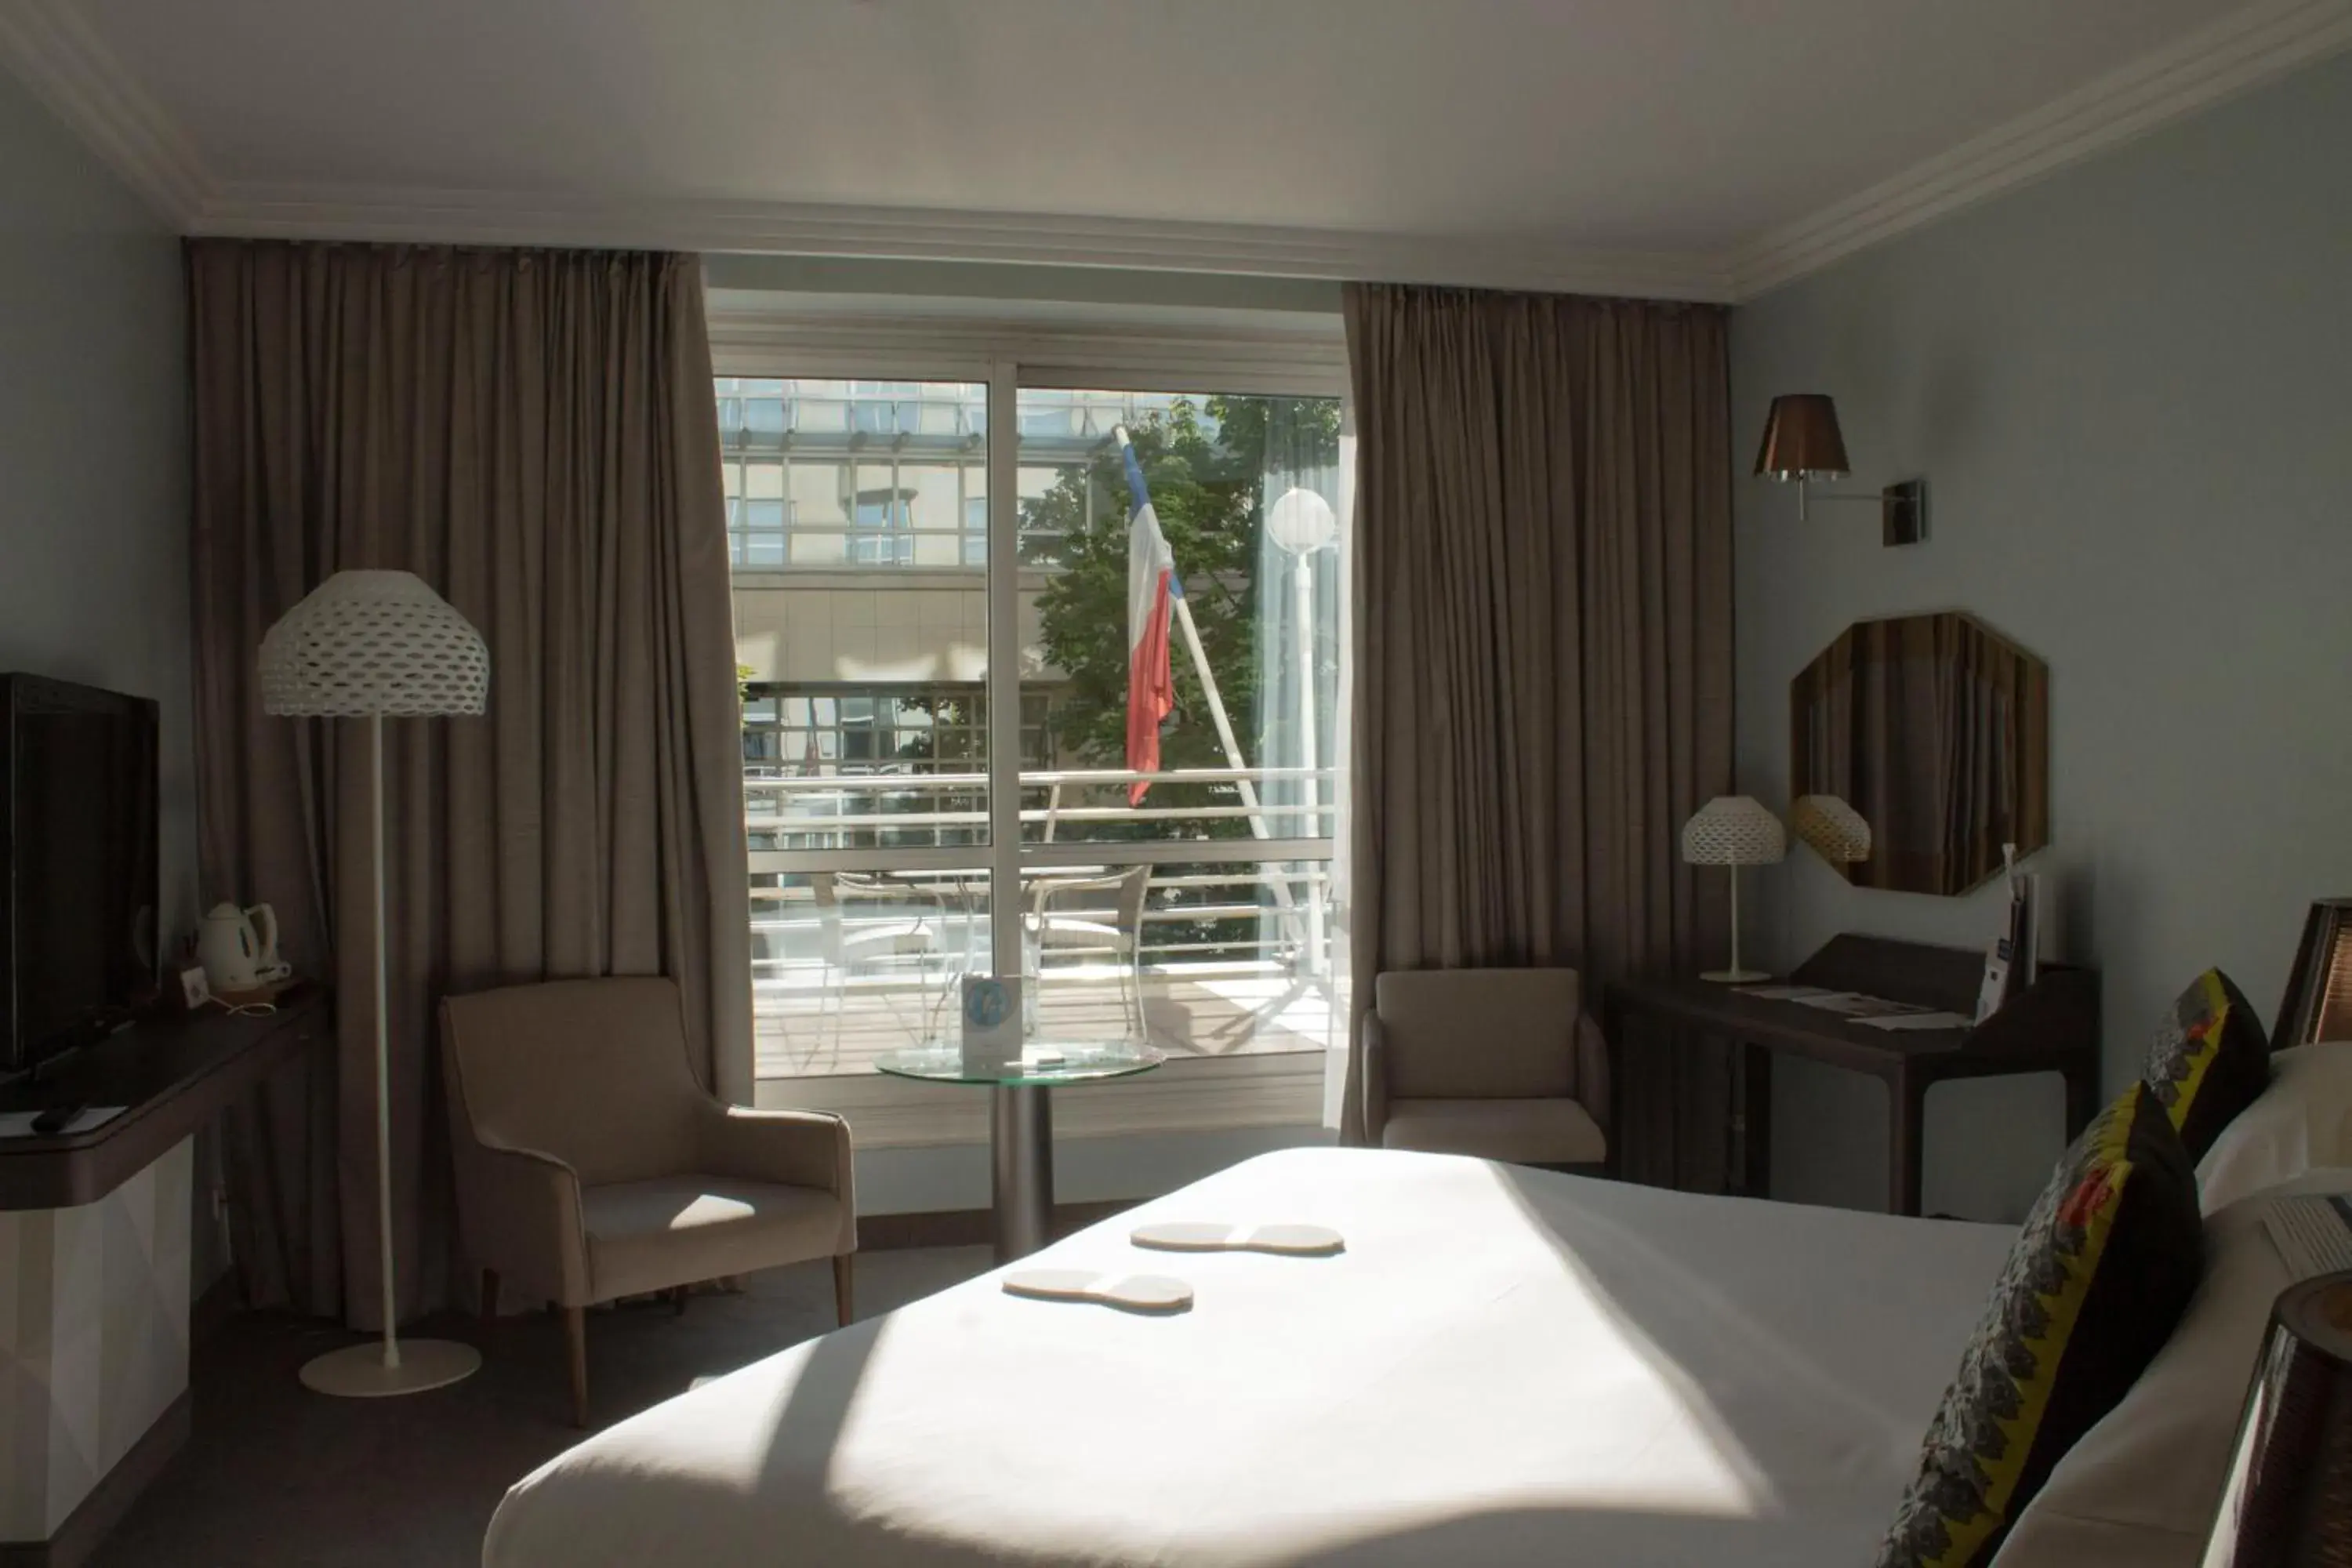 Bedroom in Vichy Spa Hotel Les Celestins